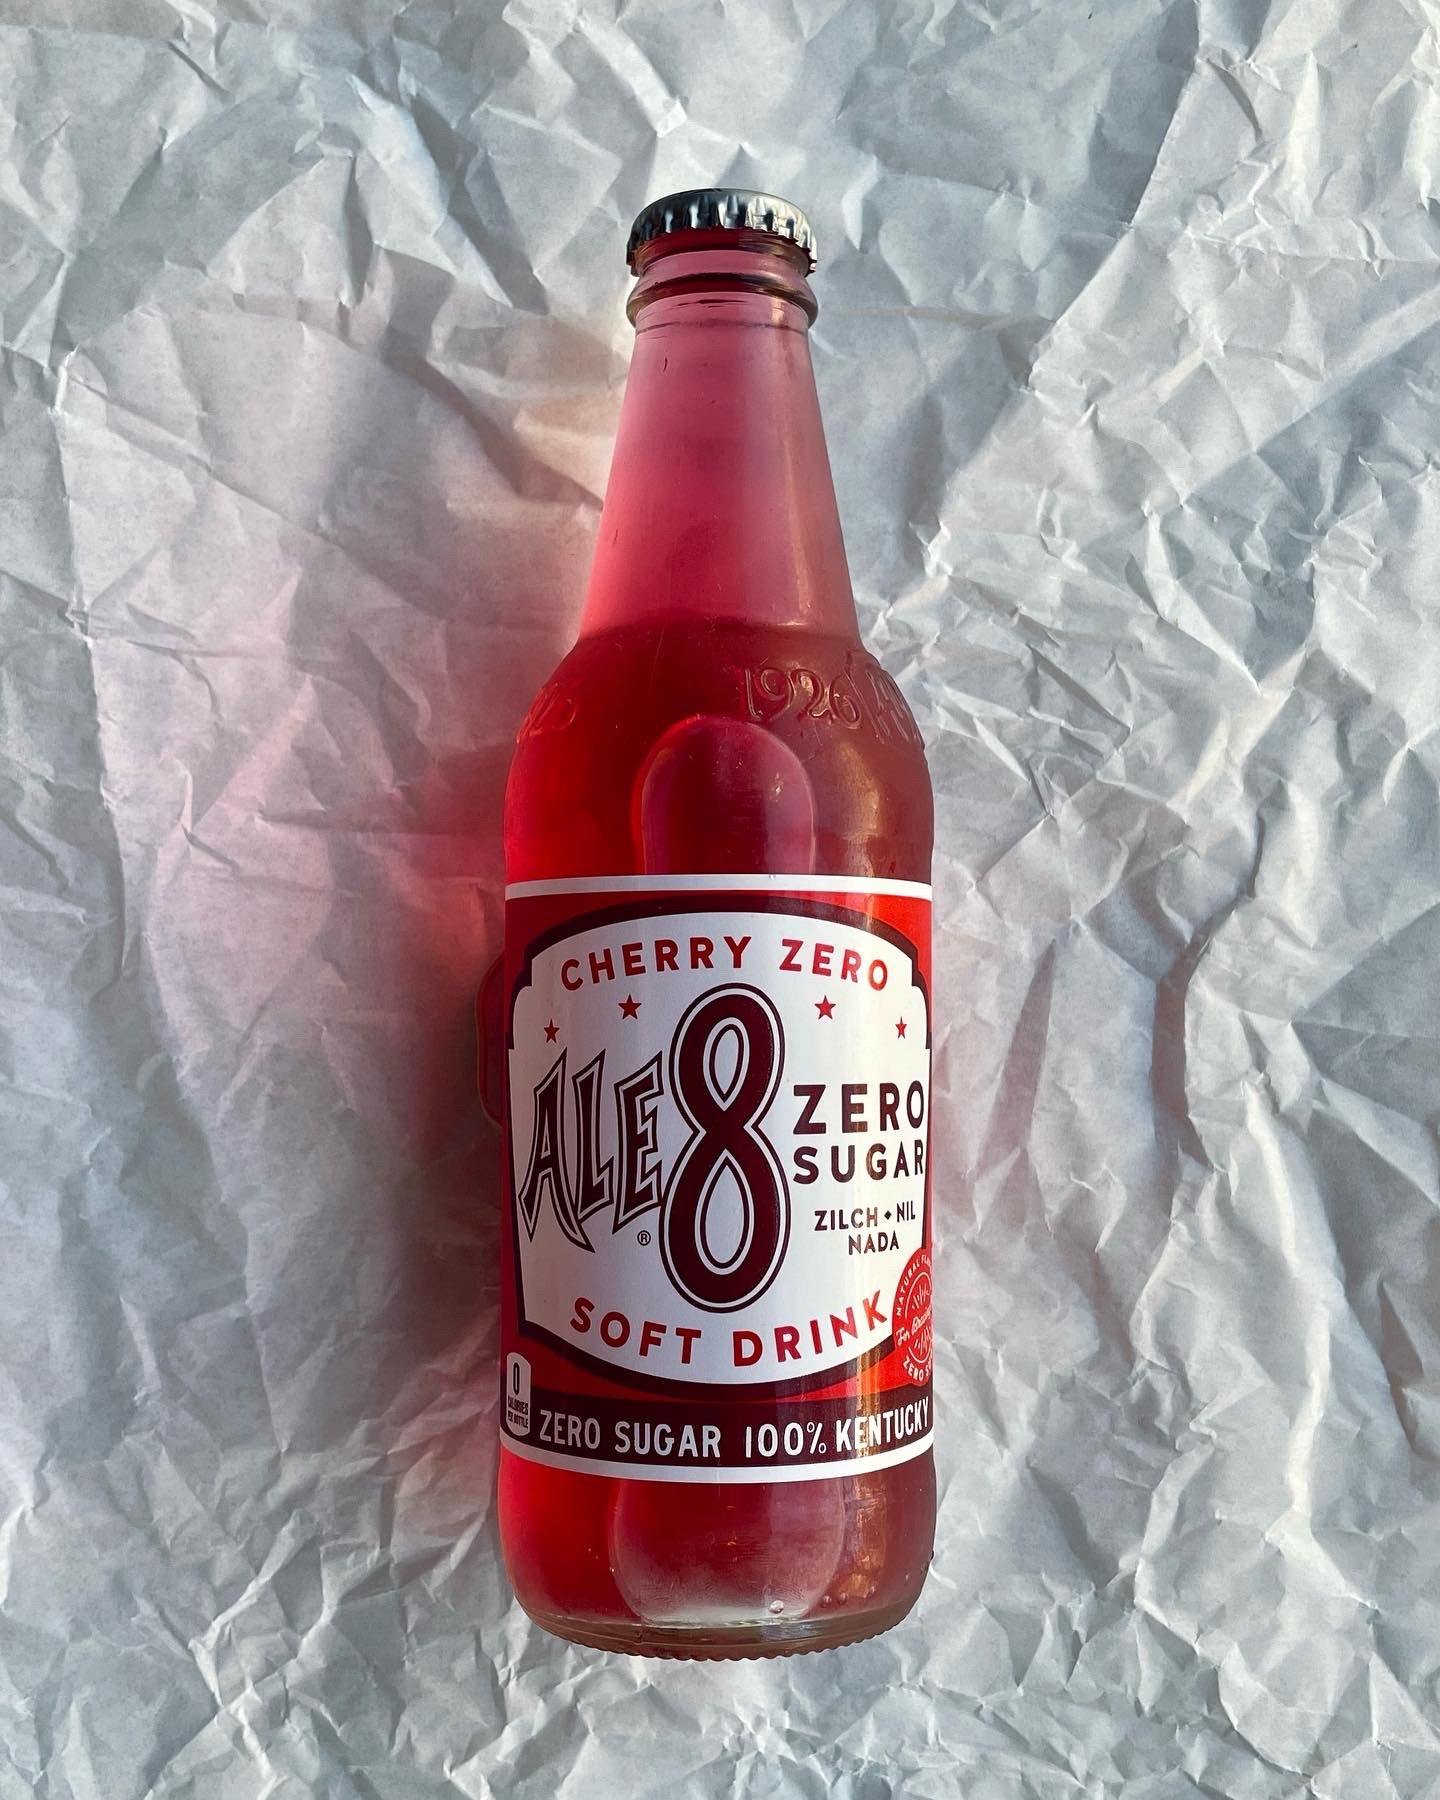 $3.00 Ale-8 1 Cherry Zero